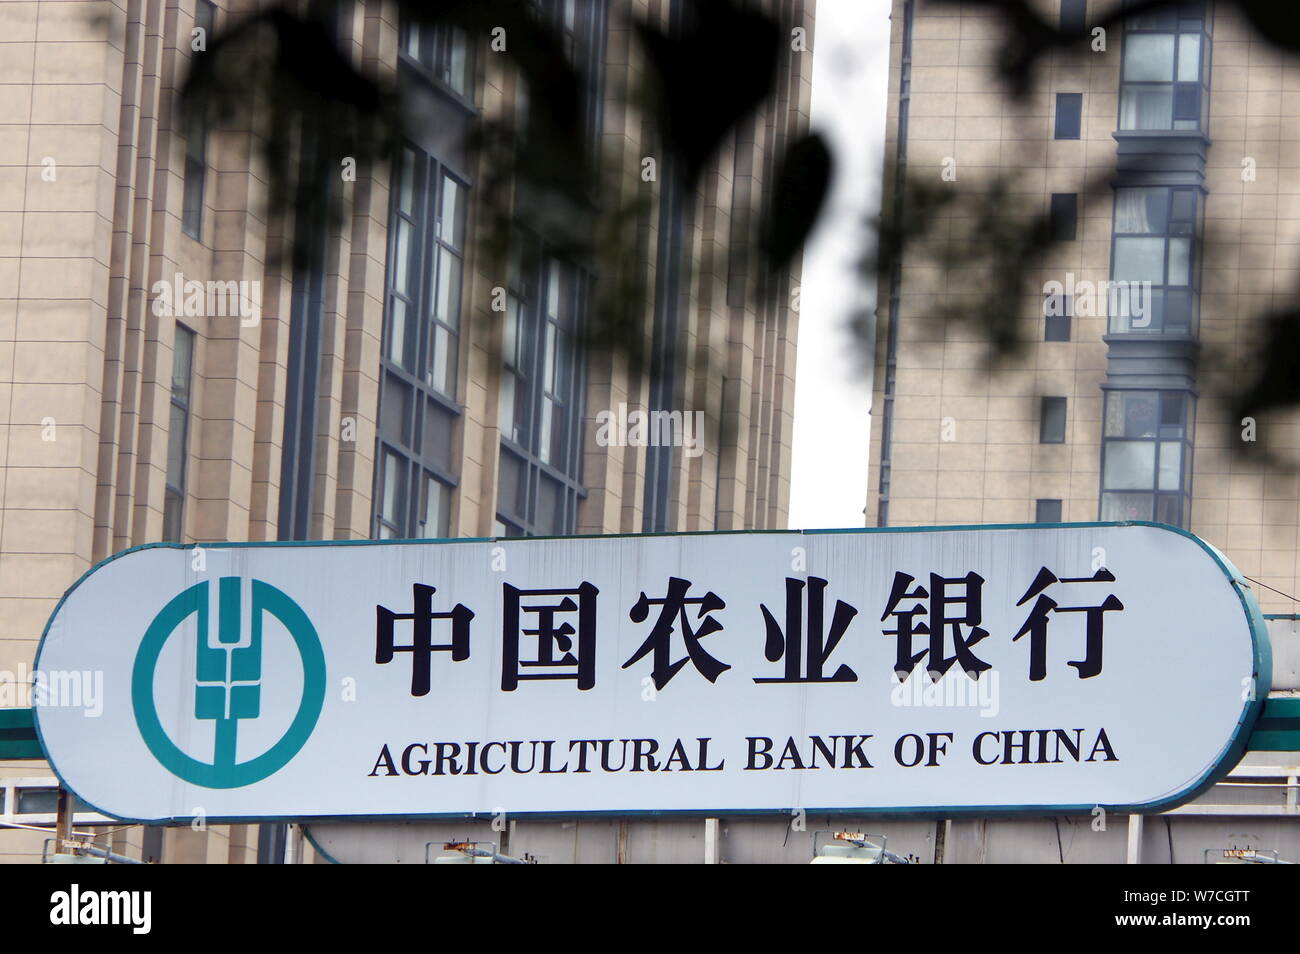 Abc bank. Сельскохозяйственный банк Китая. Банк Китая (Bank of China). Банк сельскохозяйственного развития Китая. ABC банк в Китае.